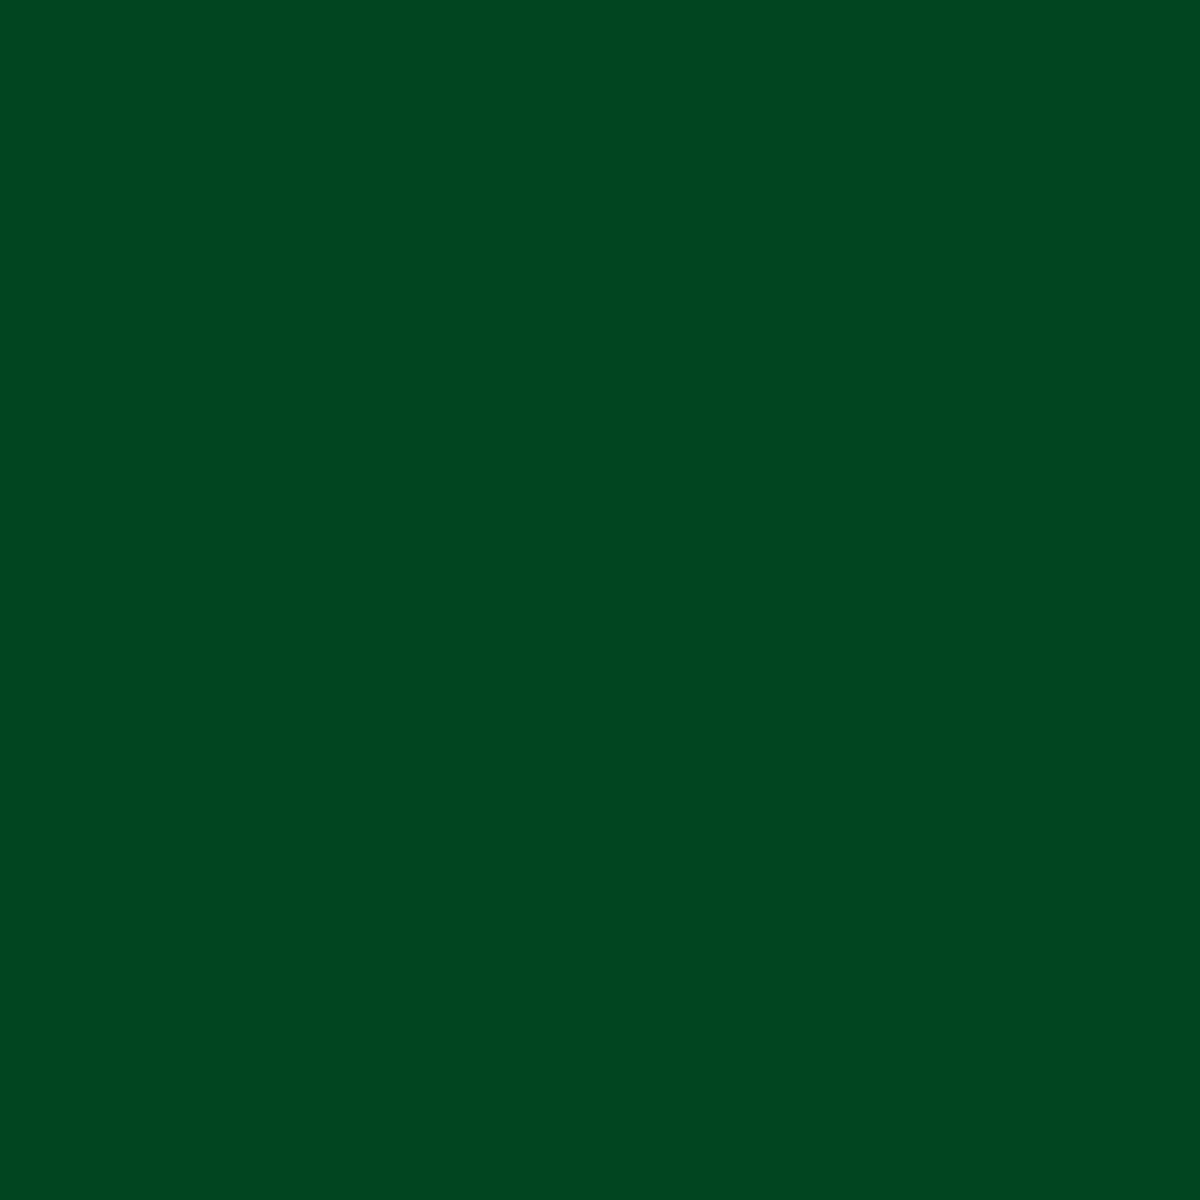 3M Film couleur translucide 3630-126 vert sapin 1,22m x 45,7m